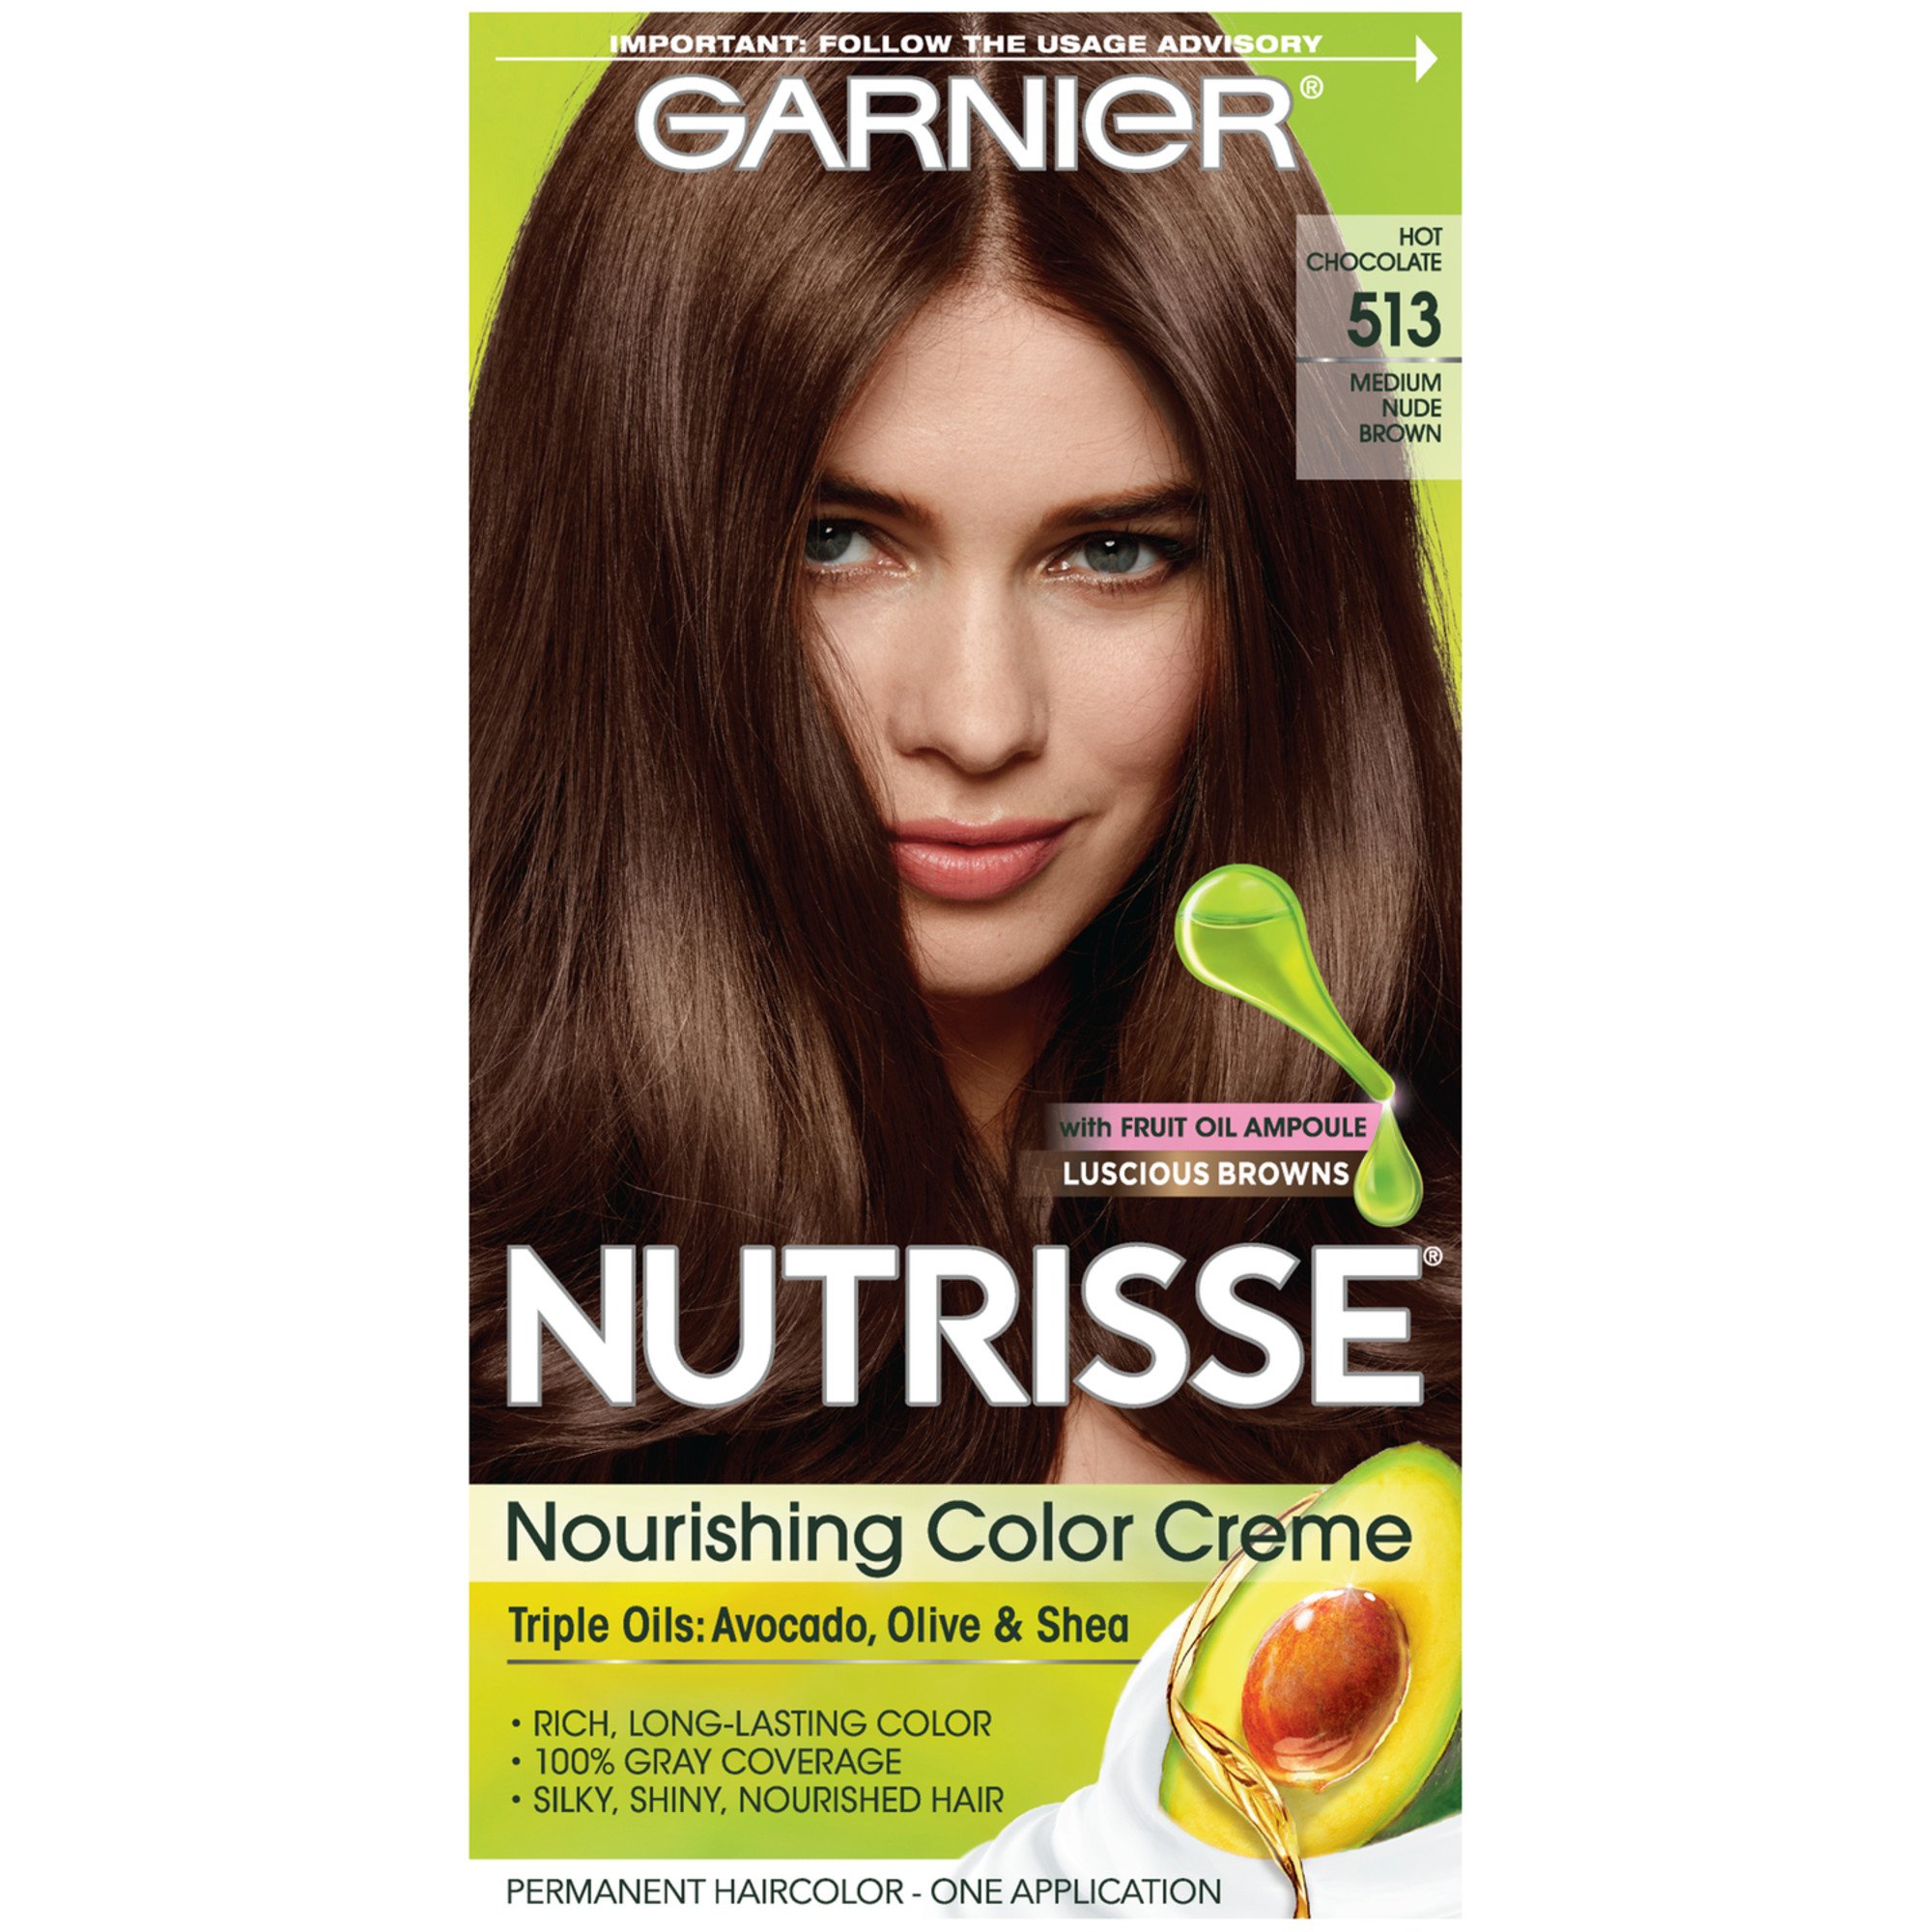 Garnier Nutrisse Nourishing Hair Color Creme Deep Hot Sex Picture